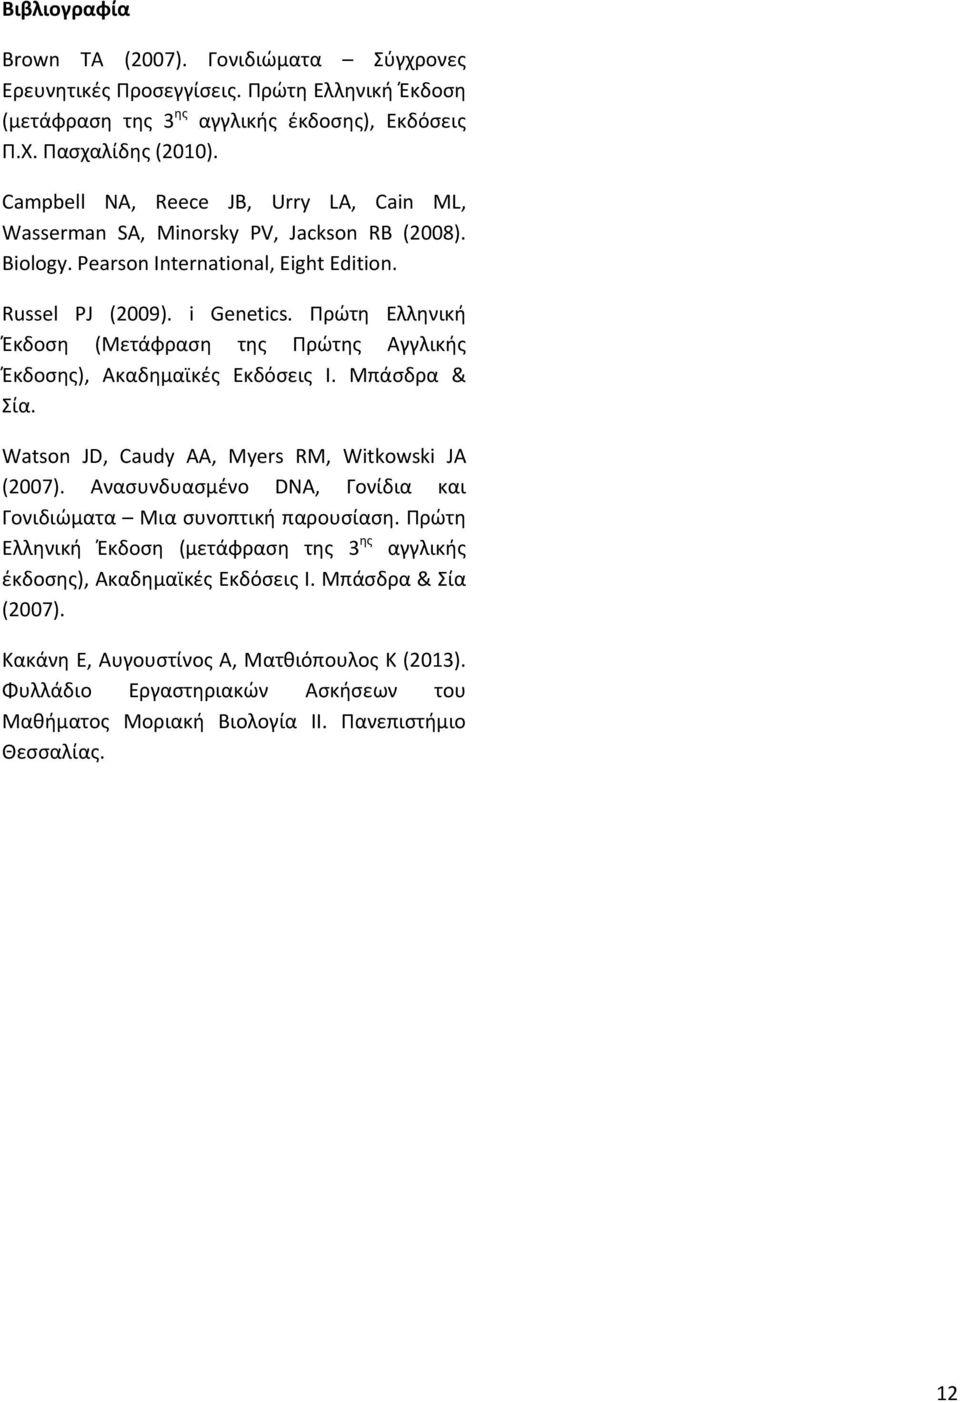 Πρώτη Ελληνική Έκδοση (Μετάφραση της Πρώτης Αγγλικής Έκδοσης), Ακαδημαϊκές Εκδόσεις Ι. Μπάσδρα & Σία. Watson JD, Caudy AA, Myers RM, Witkowski JA (2007).